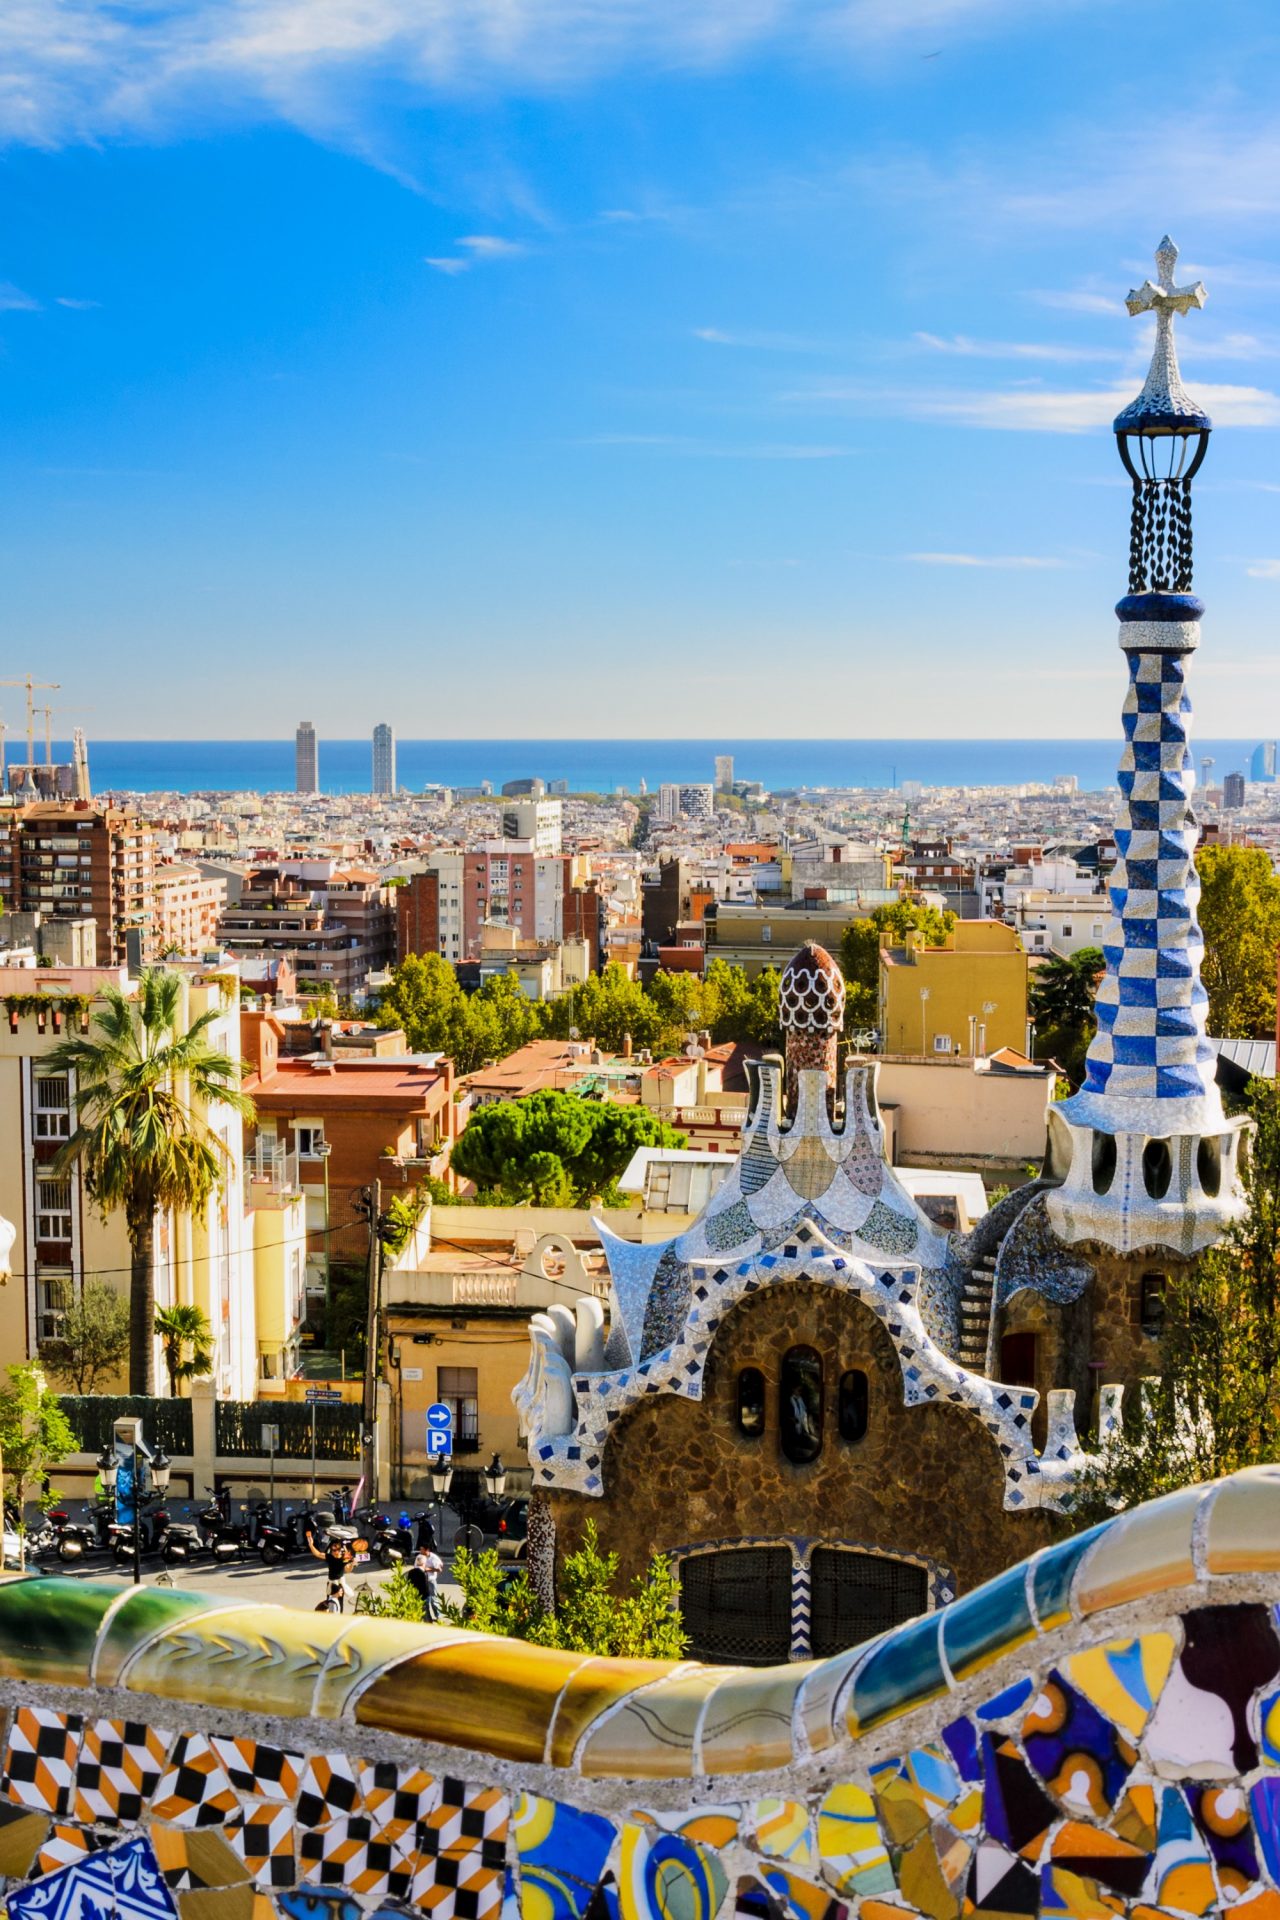 Barcelona – Vibrant Capital of Catalonia